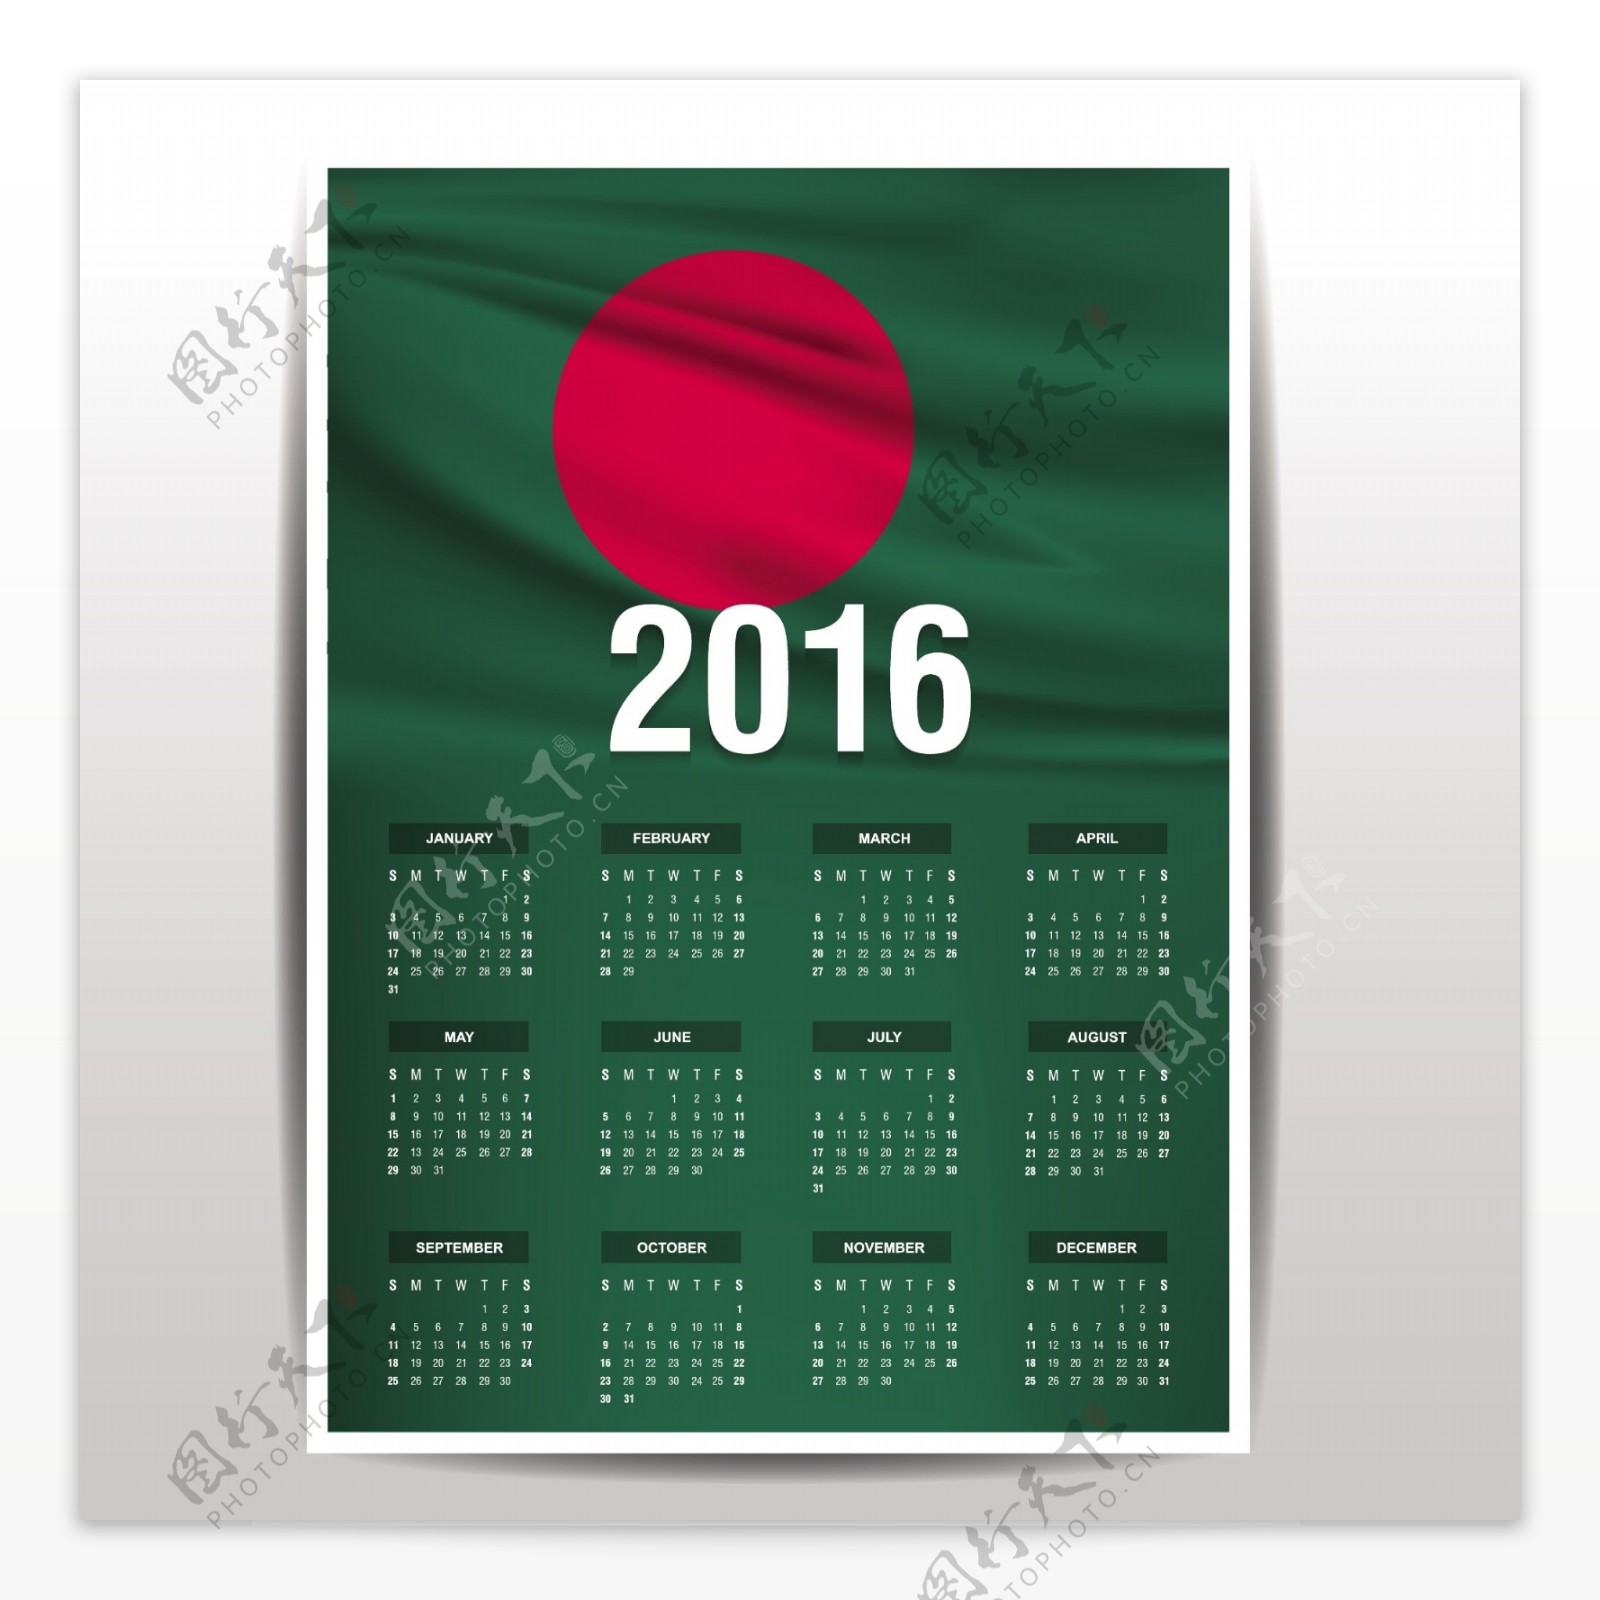 孟加拉国的2016个日历